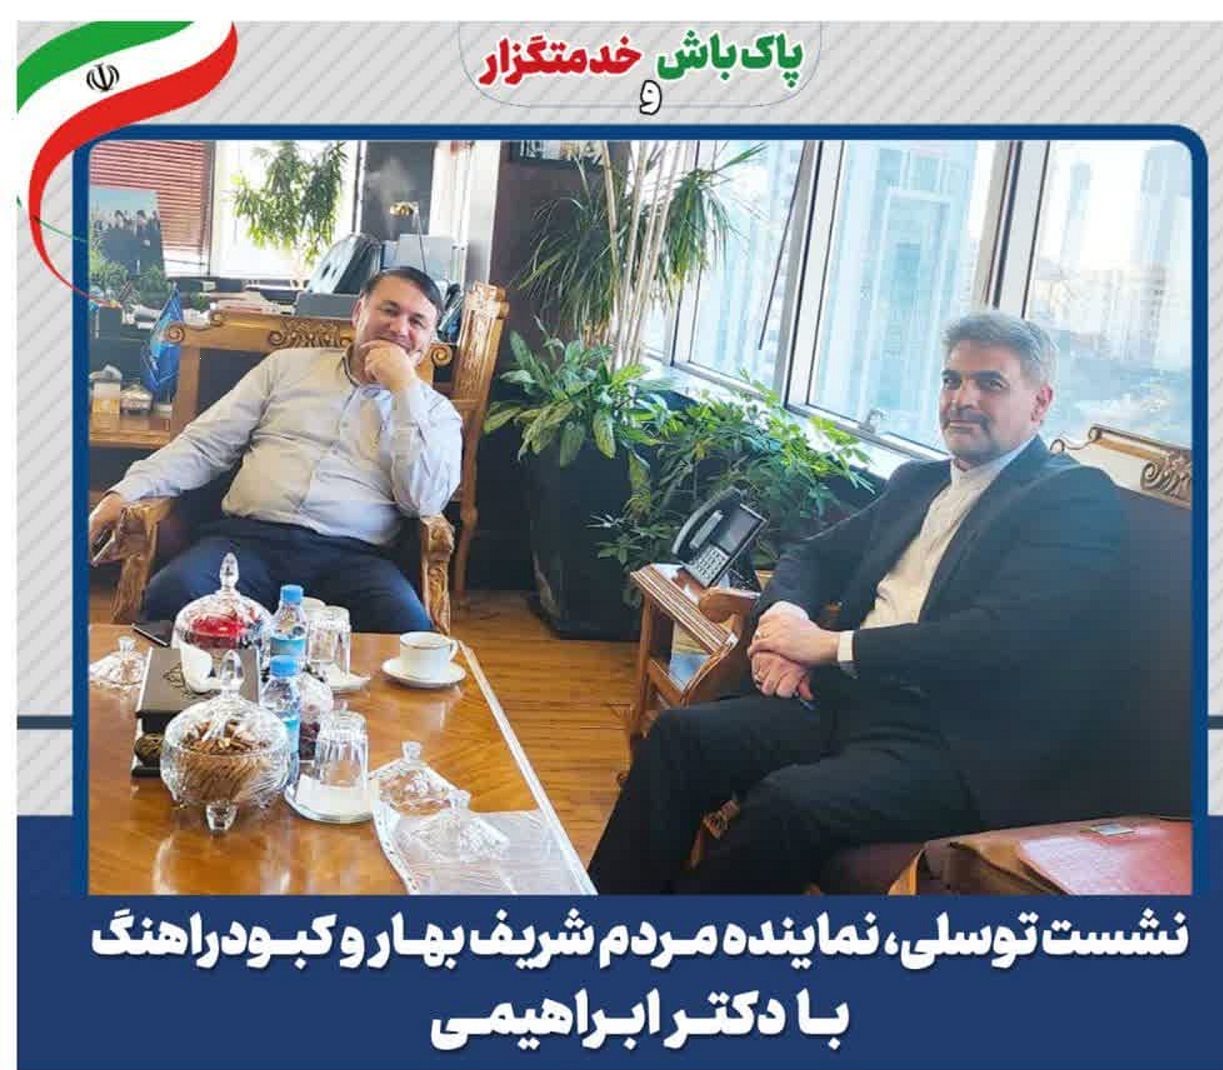 نشست توسلی، نماینده مردم شريف بهار وکبودراهنگ با دکتر ابراهیمی مدیرعامل بانک سپه کشور